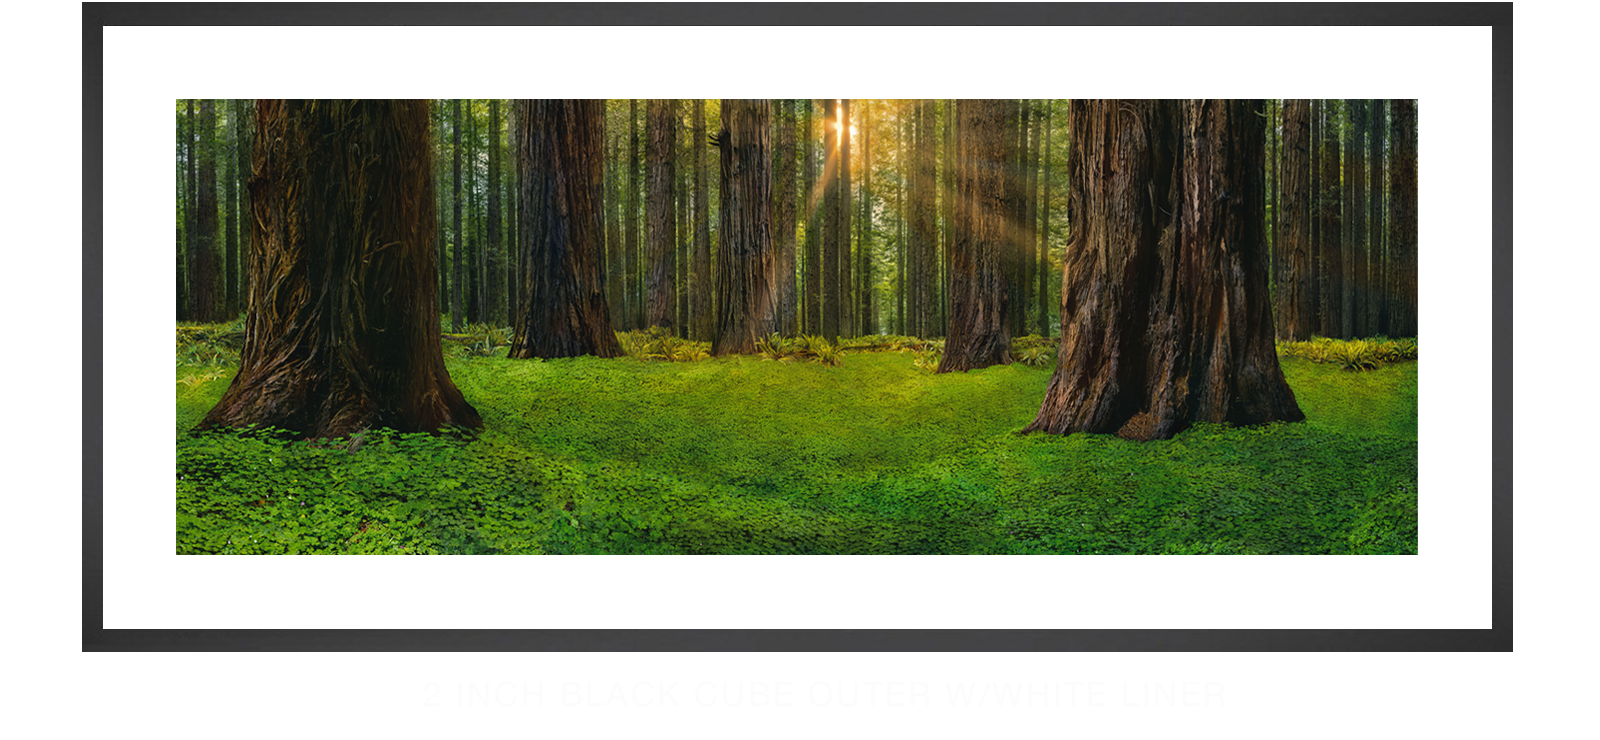 9SANCTUS_TITANICUS 2 Inch Black Cube Outer w_Wht Liner T